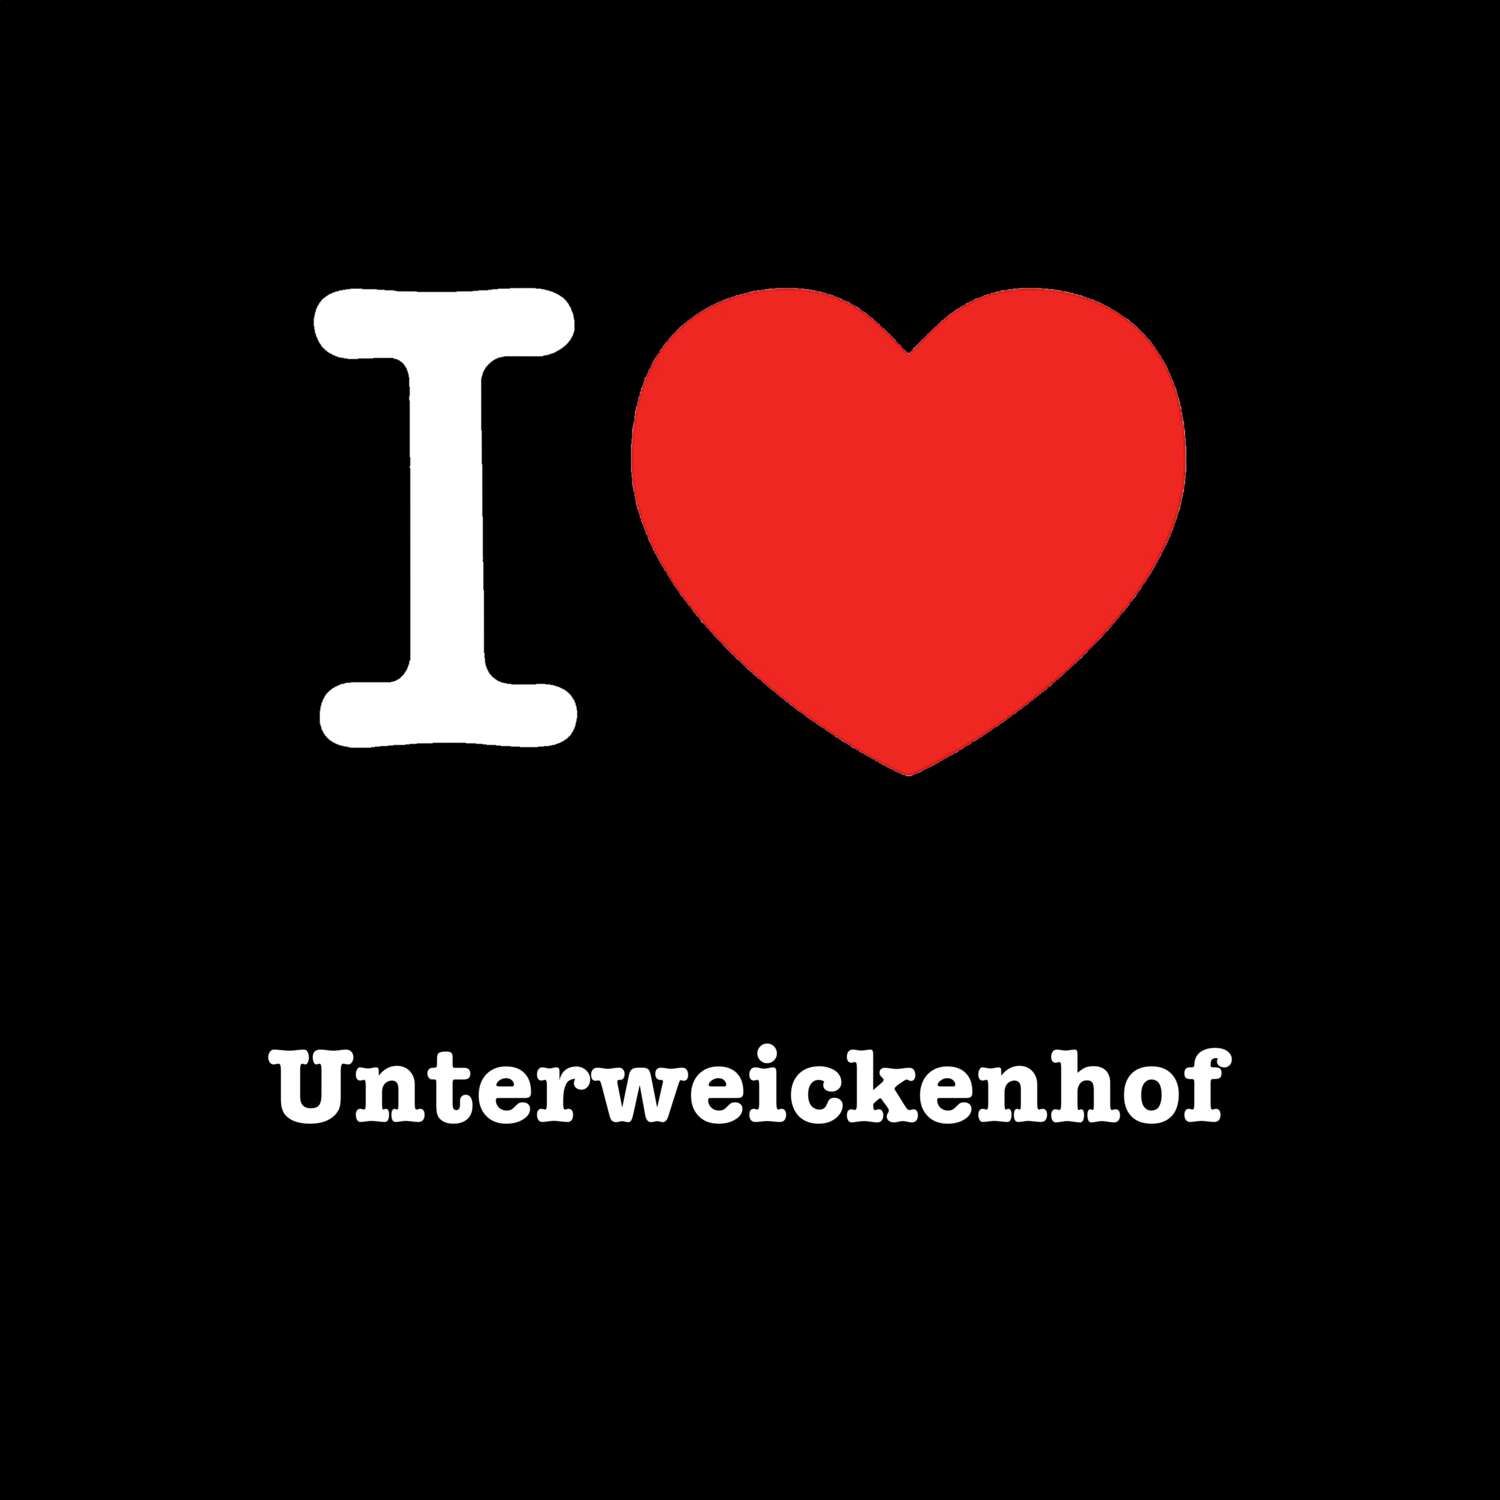 Unterweickenhof T-Shirt »I love«